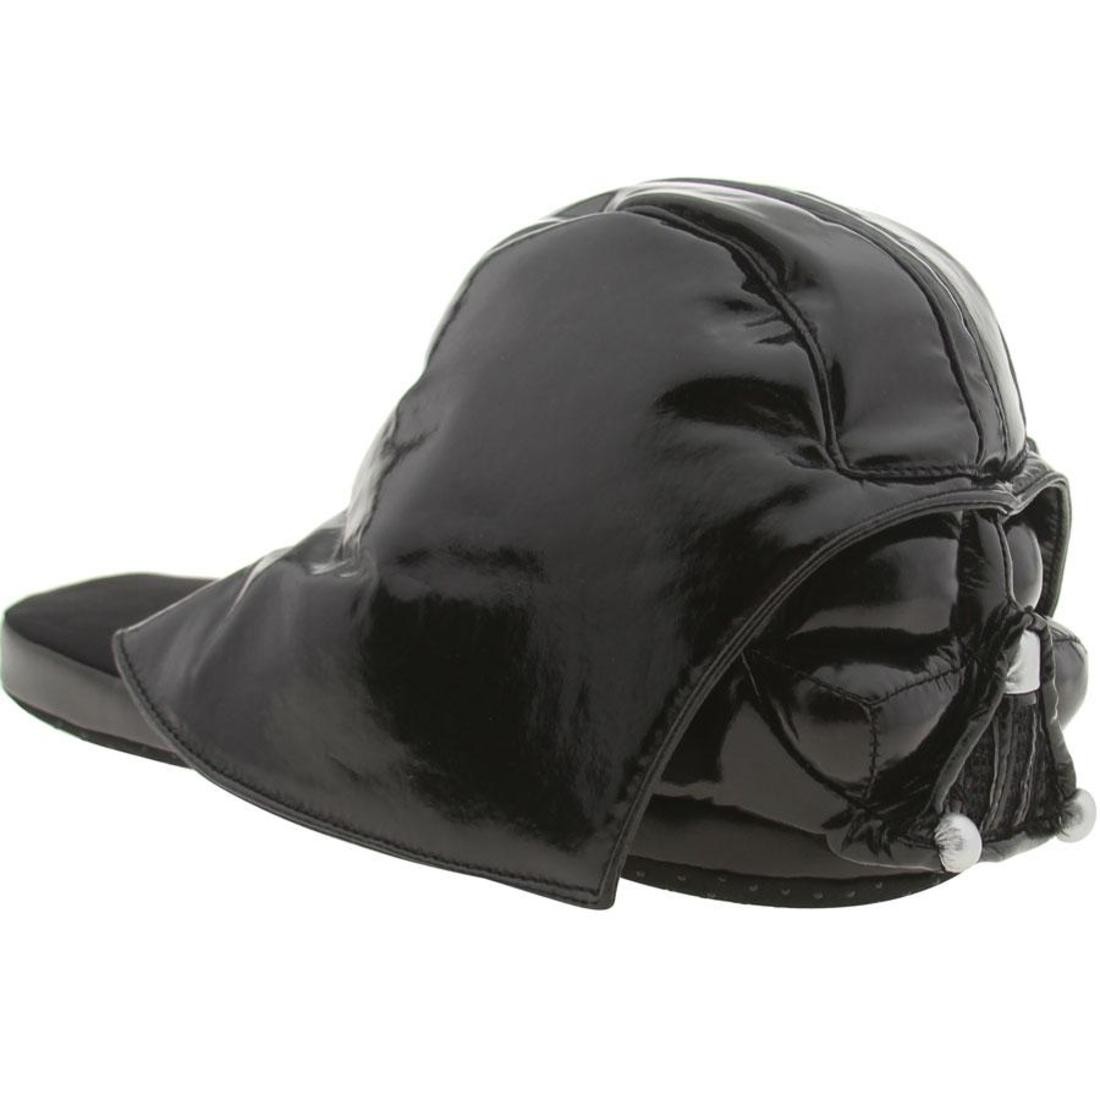 Star Wars Darth Vader Slippers (black)